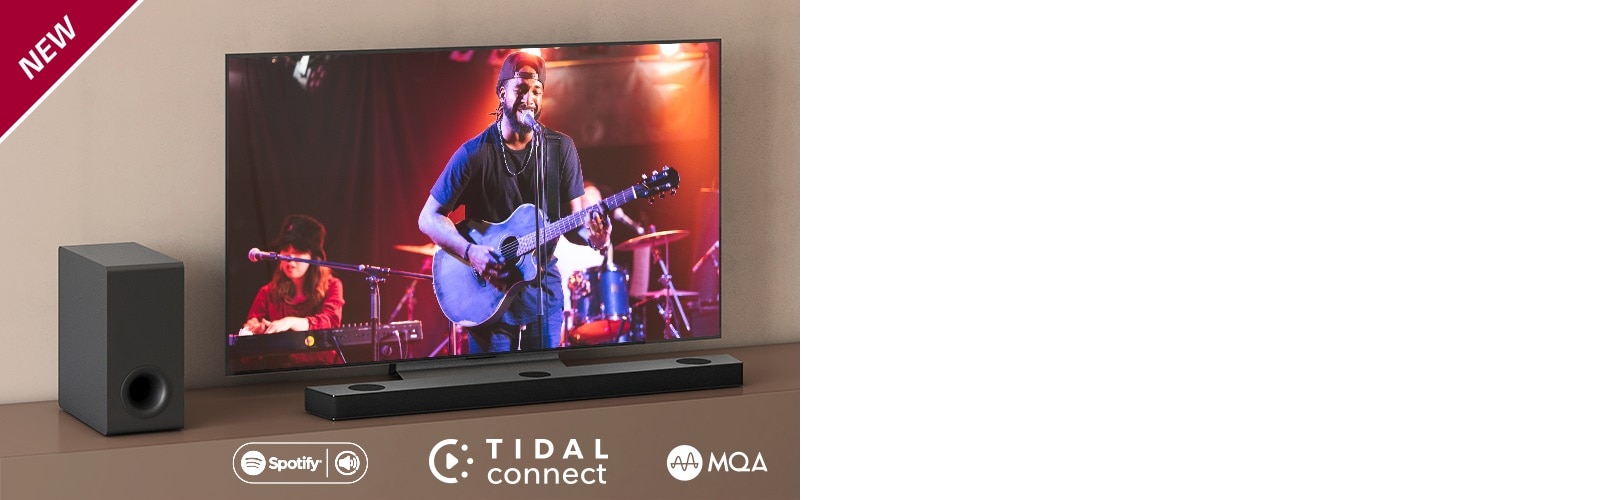 Η τηλεόραση LG είναι τοποθετημένη στο καφέ ράφι, και το LG Sound Bar S95QR βρίσκεται μπροστά από την τηλεόραση. Το υπογούφερ βρίσκεται στην αριστερή πλευρά της τηλεόρασης. Η τηλεόραση δείχνει μια σκηνή από συναυλία. Το σήμα NEW εμφανίζεται στην επάνω αριστερή γωνία.